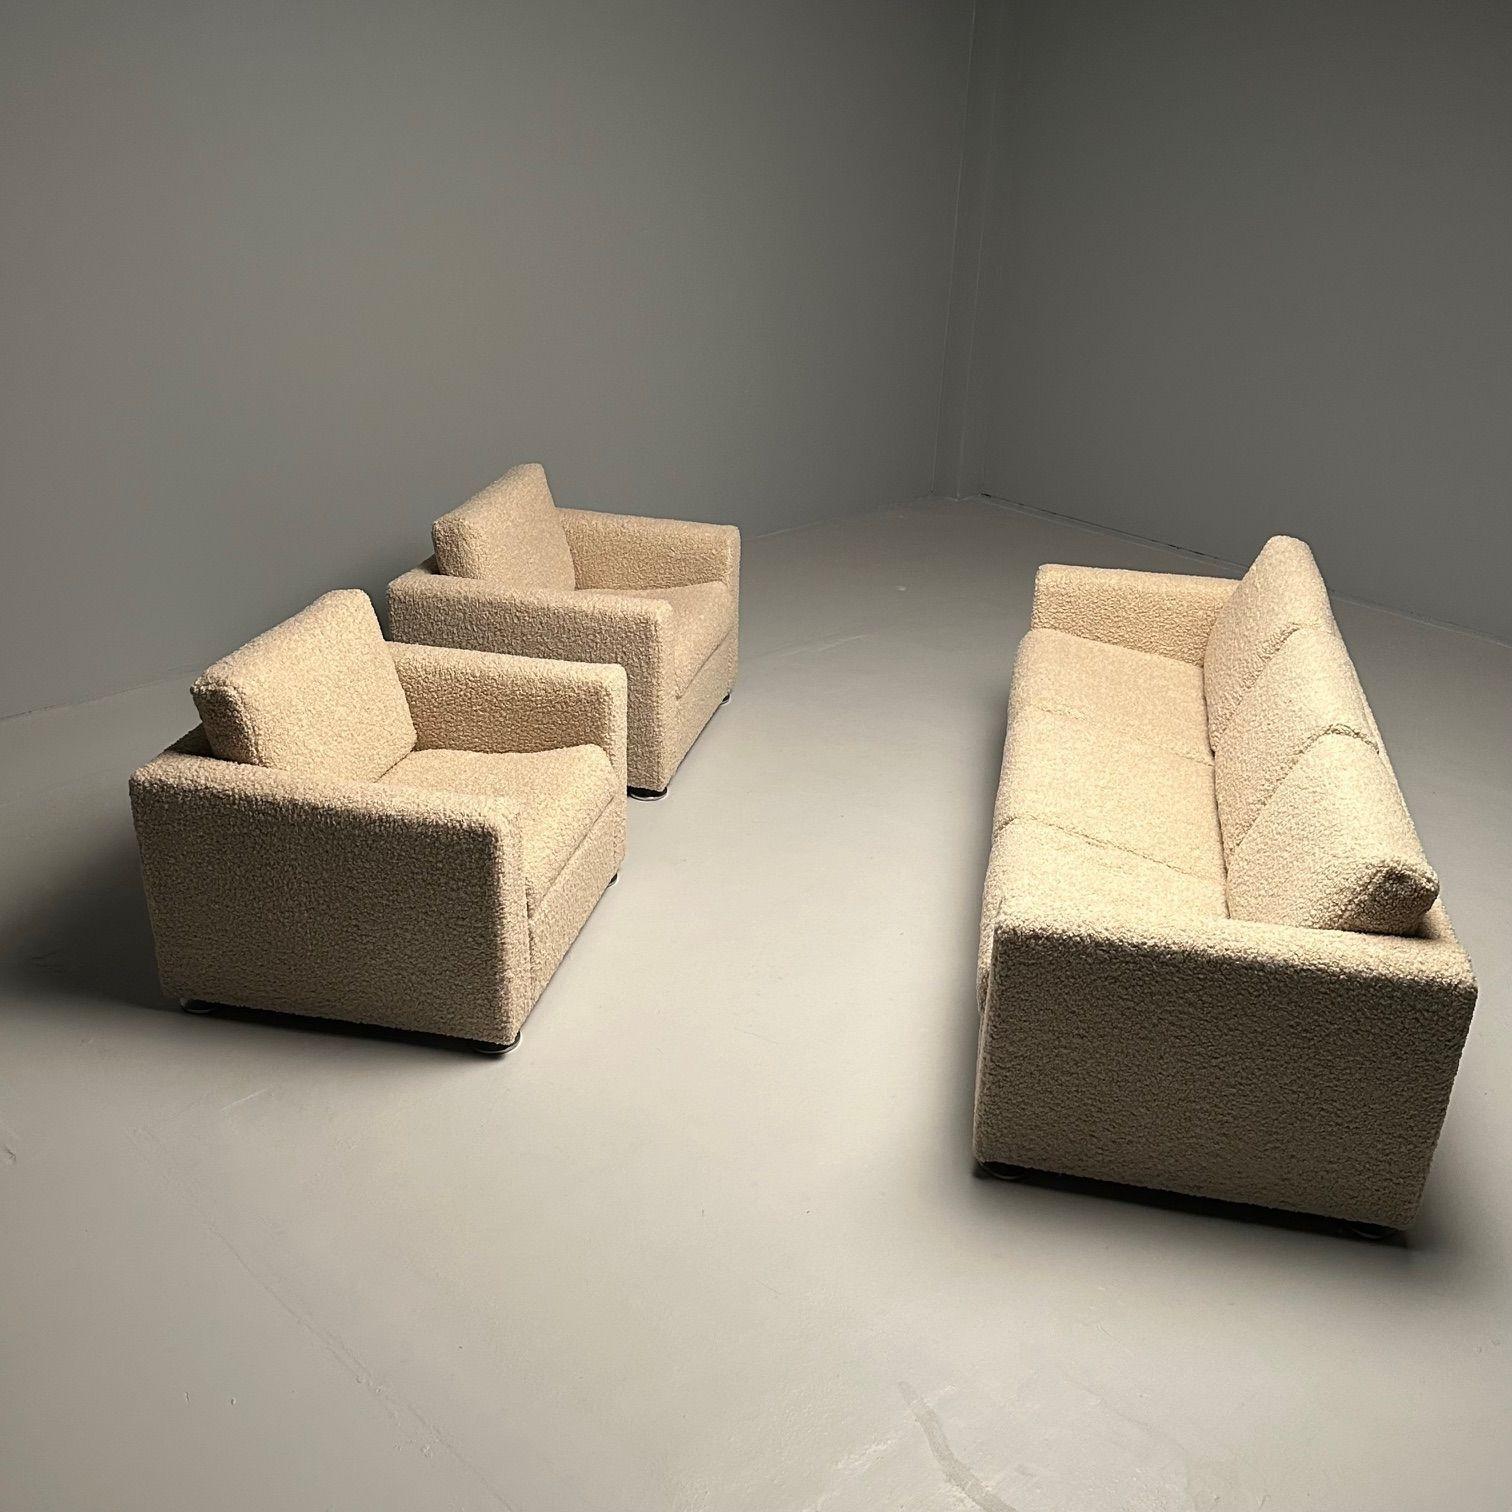 Sofa & Paar Cube Chairs von Stendig, Schweiz, New Sheepskin Boucle, Mid Century Modern, Labeled

Eine seltene Mid Century Modern Wohnzimmer ret in tadellosem Zustand. Sofa und ein Paar Cube Chairs von Stendig Made, in der Schweiz, und neu gepolstert